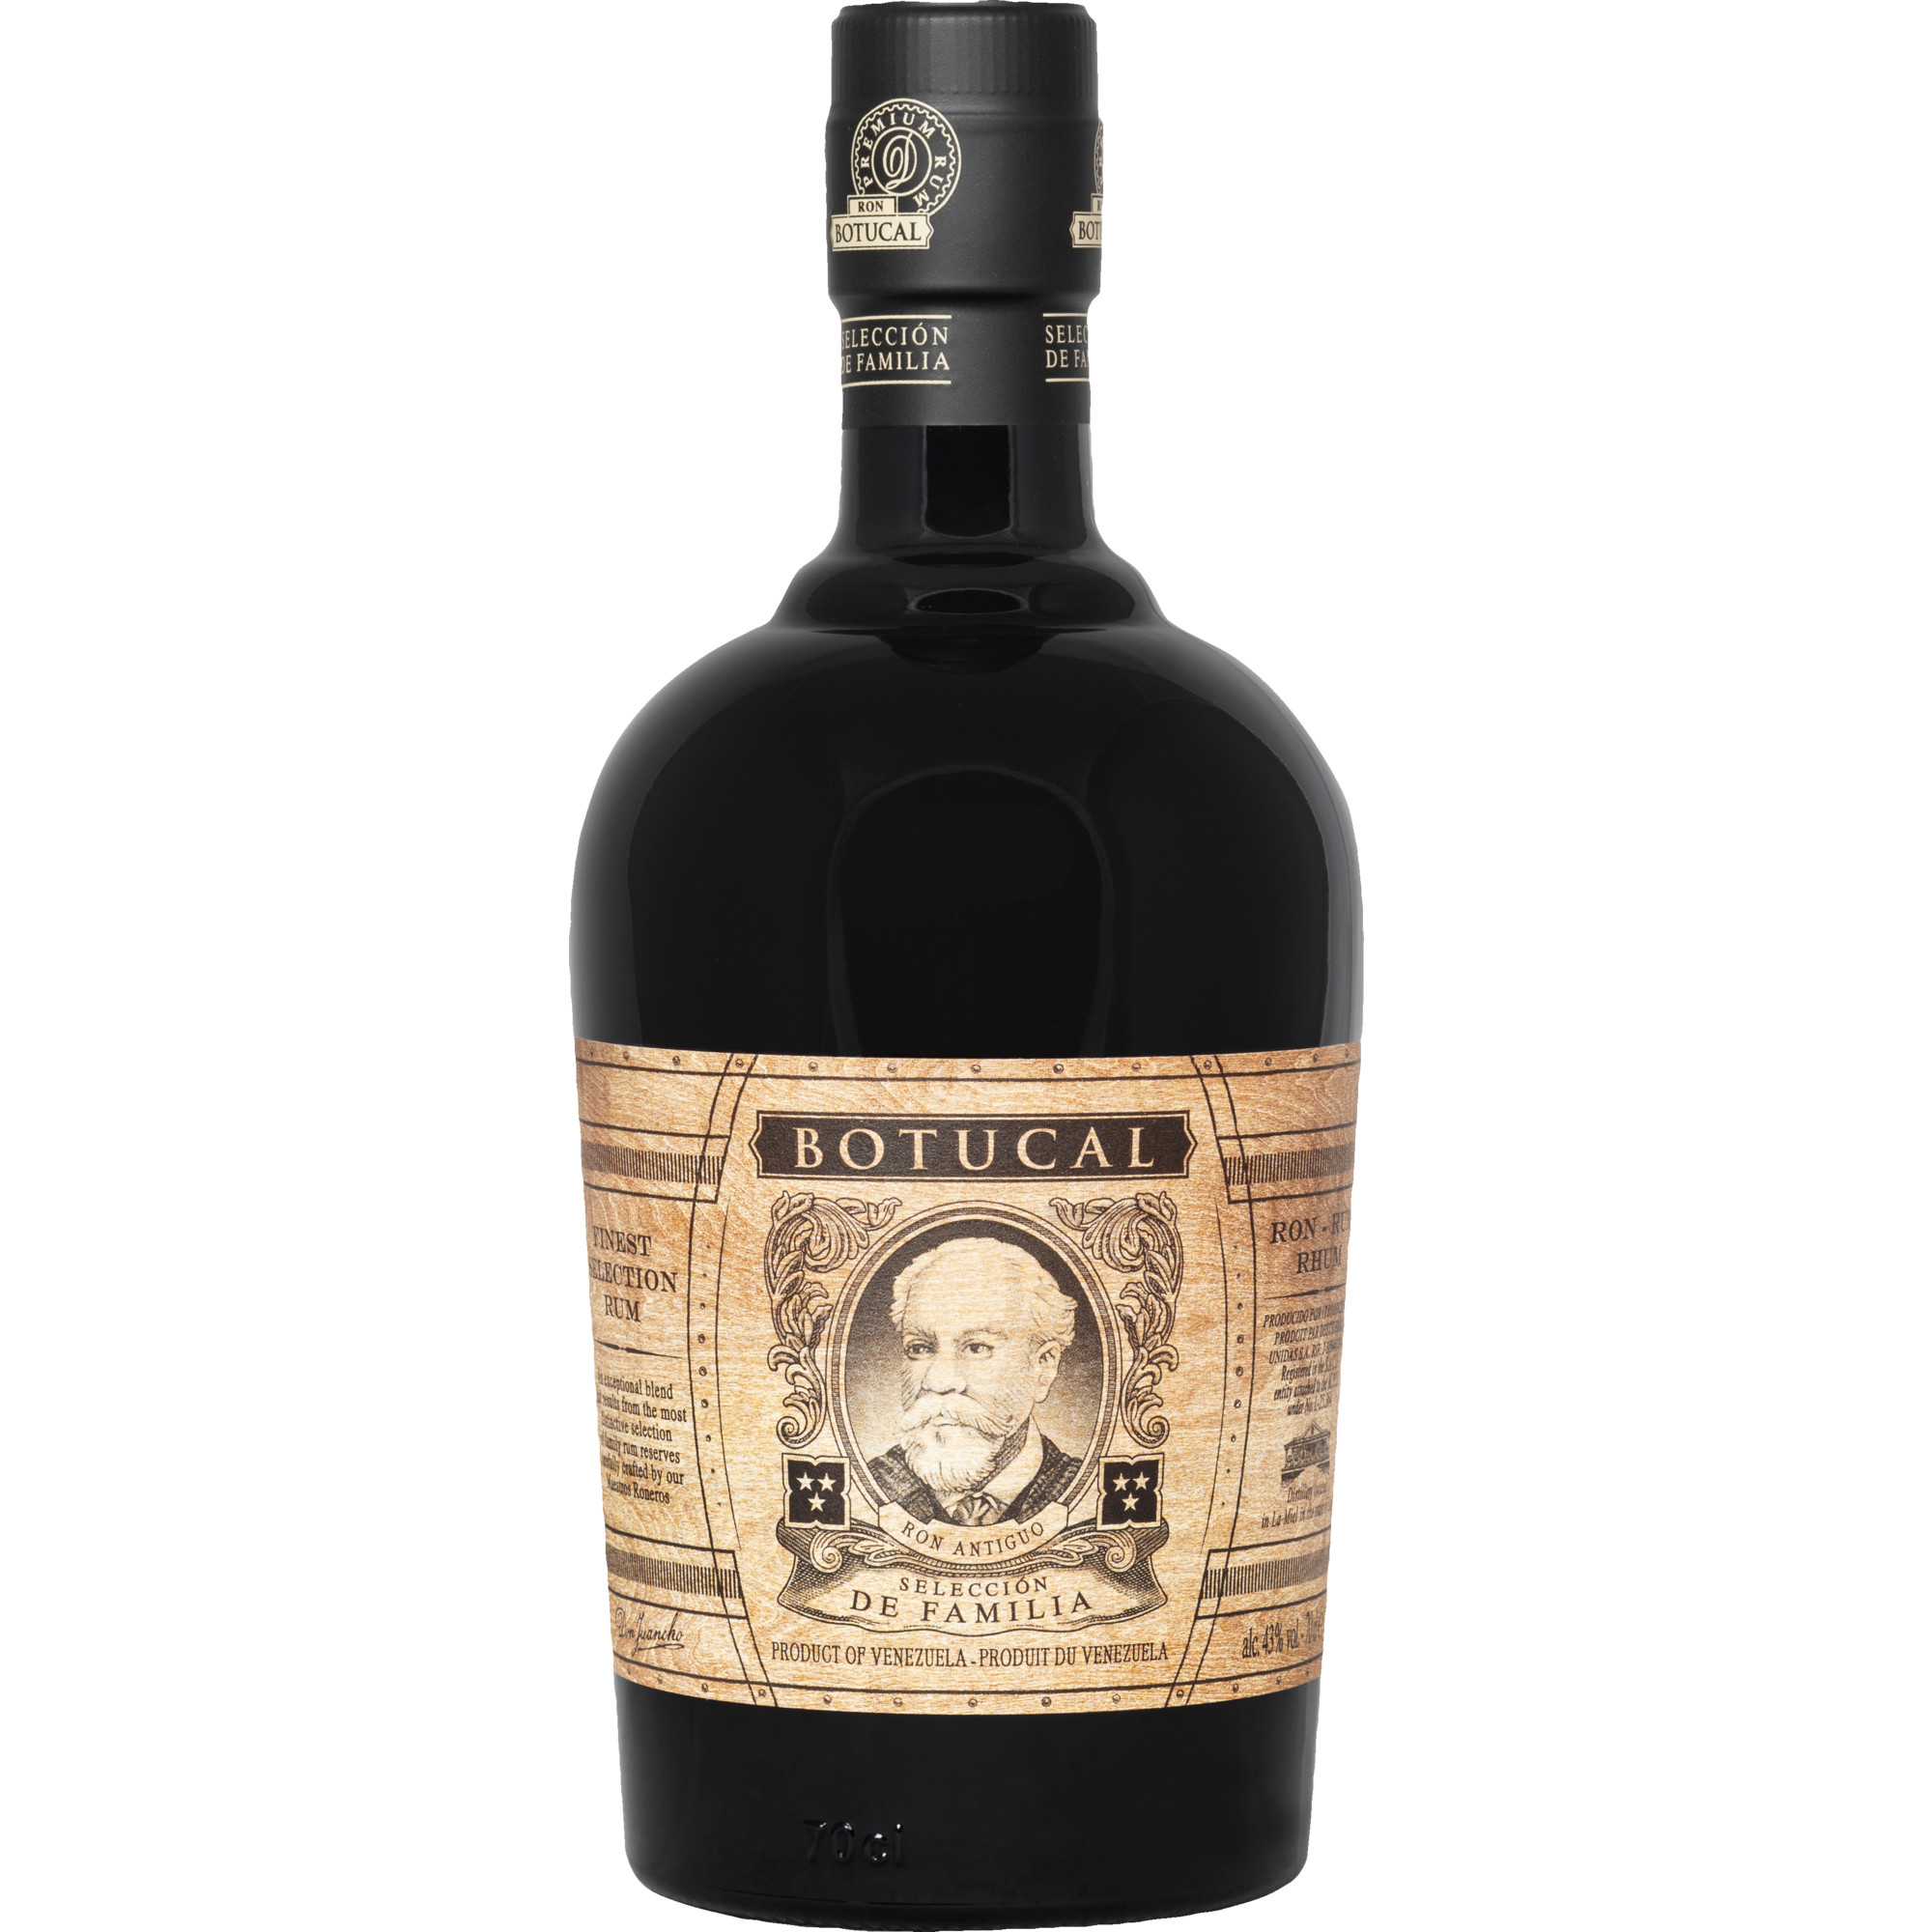 Botucal Rum Selección de Familia, Venezuela, 0,7 L, 43 %Vol., in Geschenkverpackung, Spirituosen Sierra Madre GmbH, Rohrstr. 26, 56093 Hagen, Germany Hawesko DE